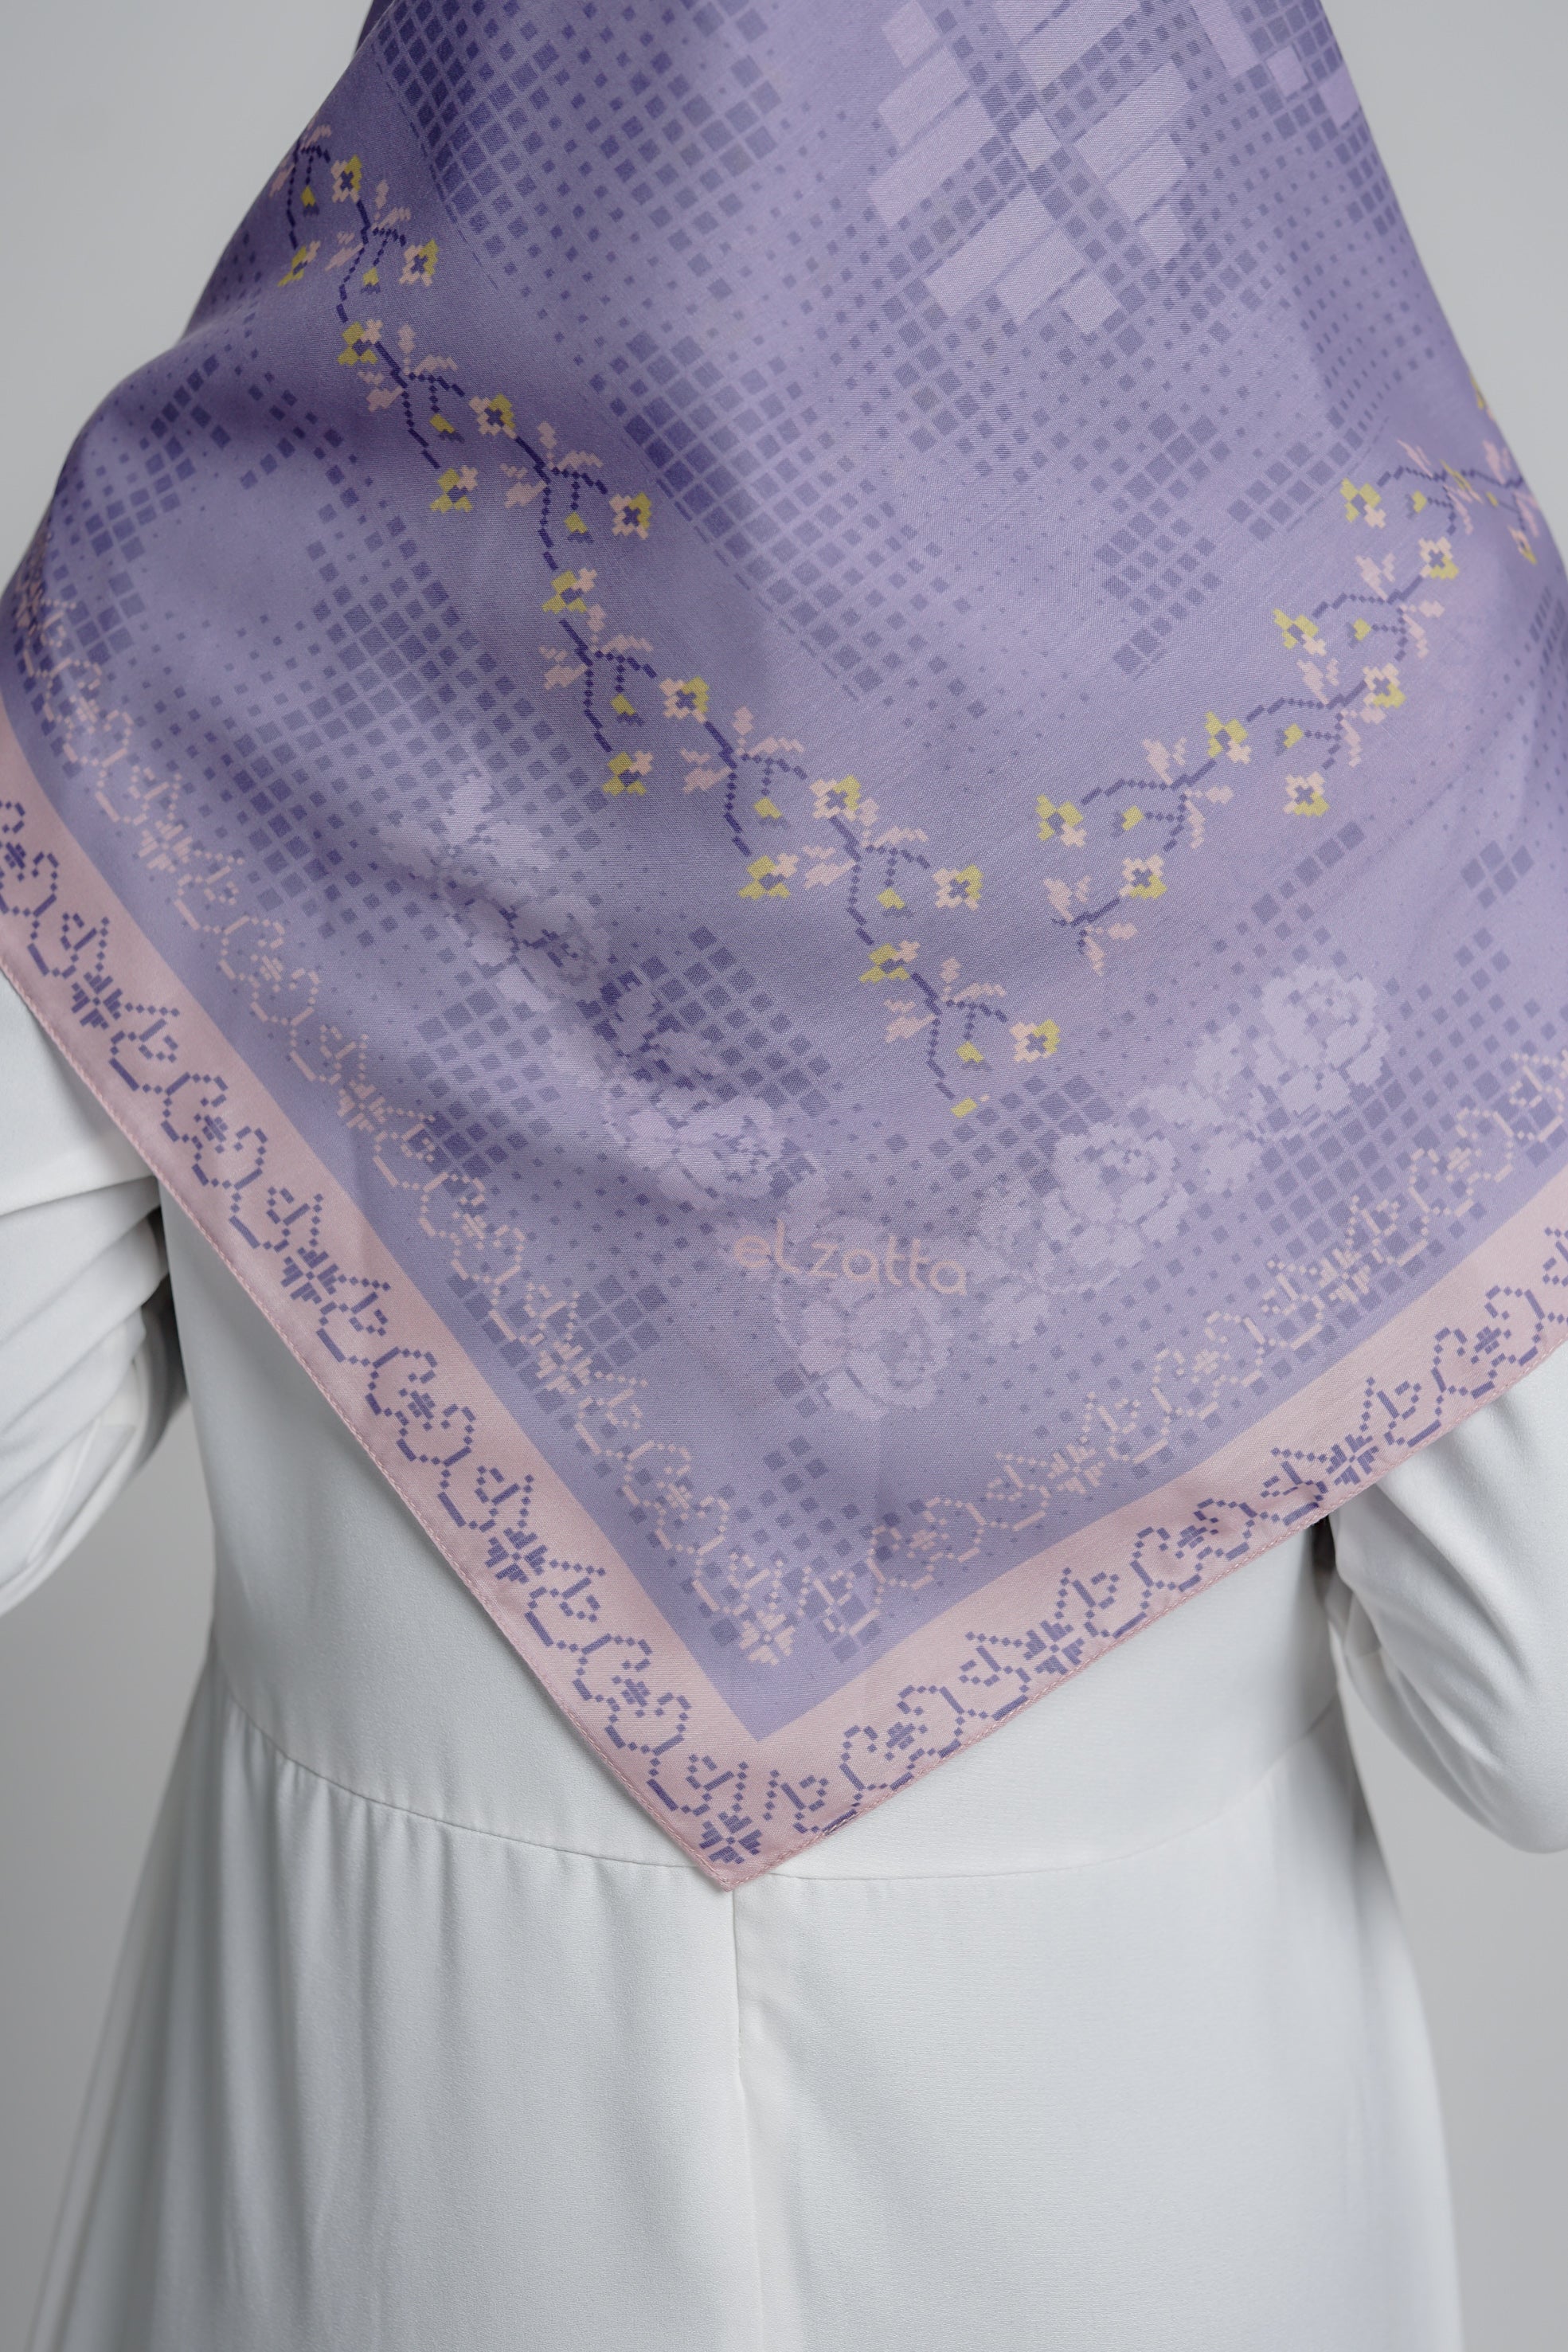 Elzatta - Hijab Segiempat Kaila Pixel Flower - Lavender